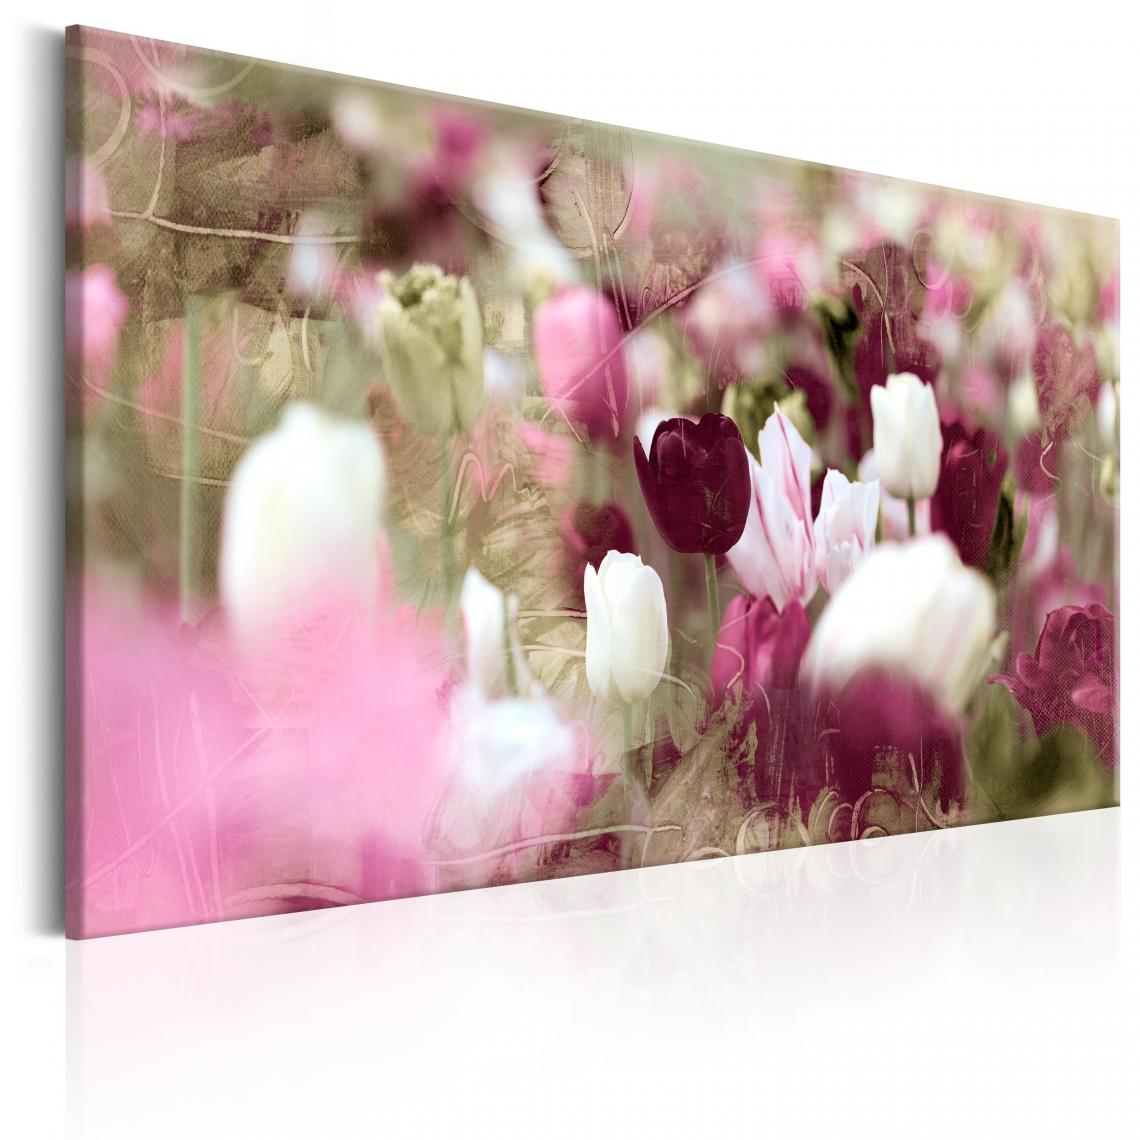 Decoshop26 - Tableau sur toile décoration murale image imprimée cadre en bois à suspendre Prairie de tulipes 60x40 cm 11_0005768 - Tableaux, peintures